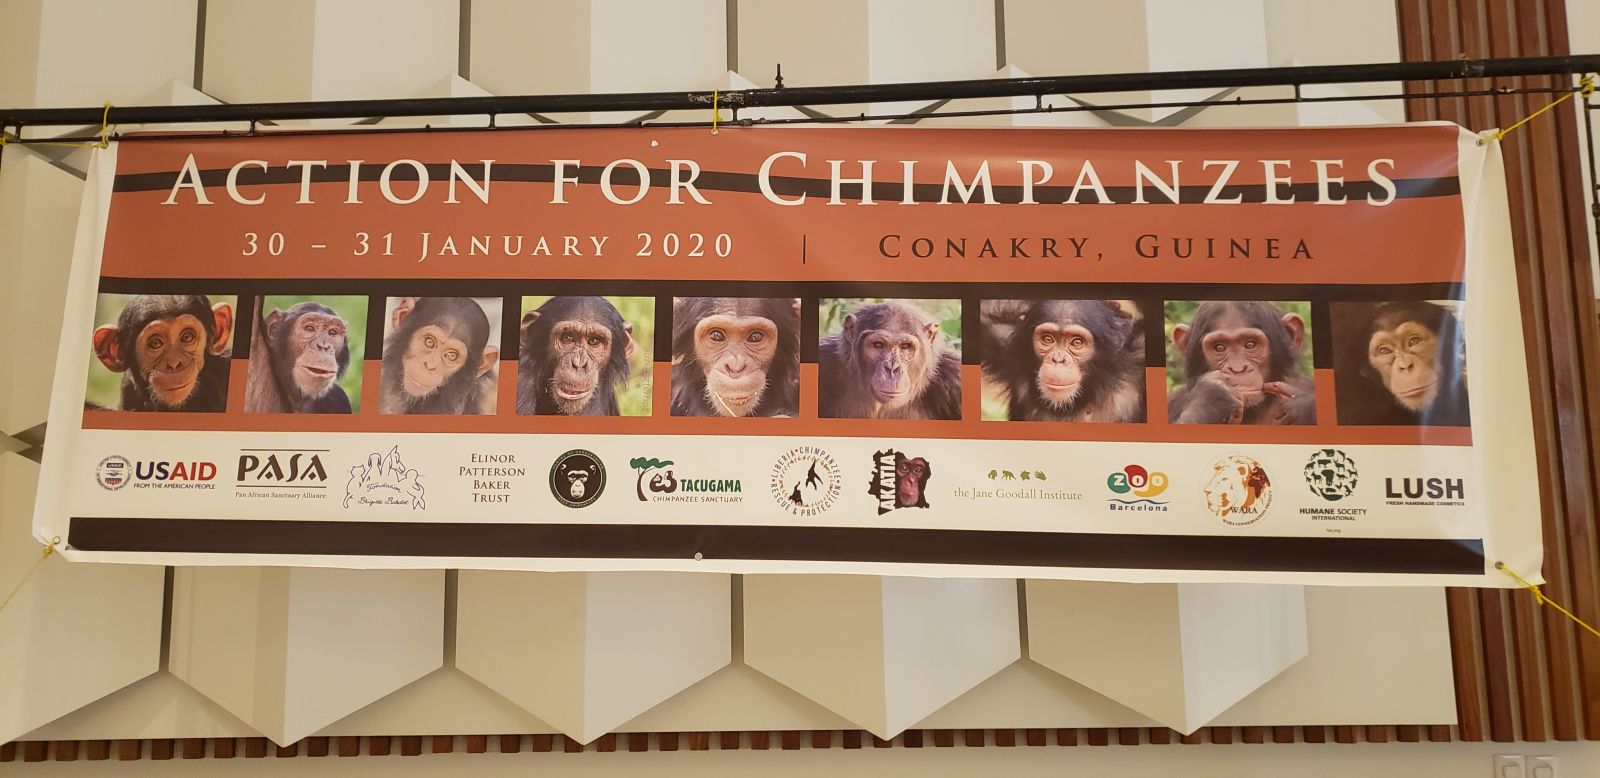 Reunión en Guinea contra el tráfico de chimpancés en África